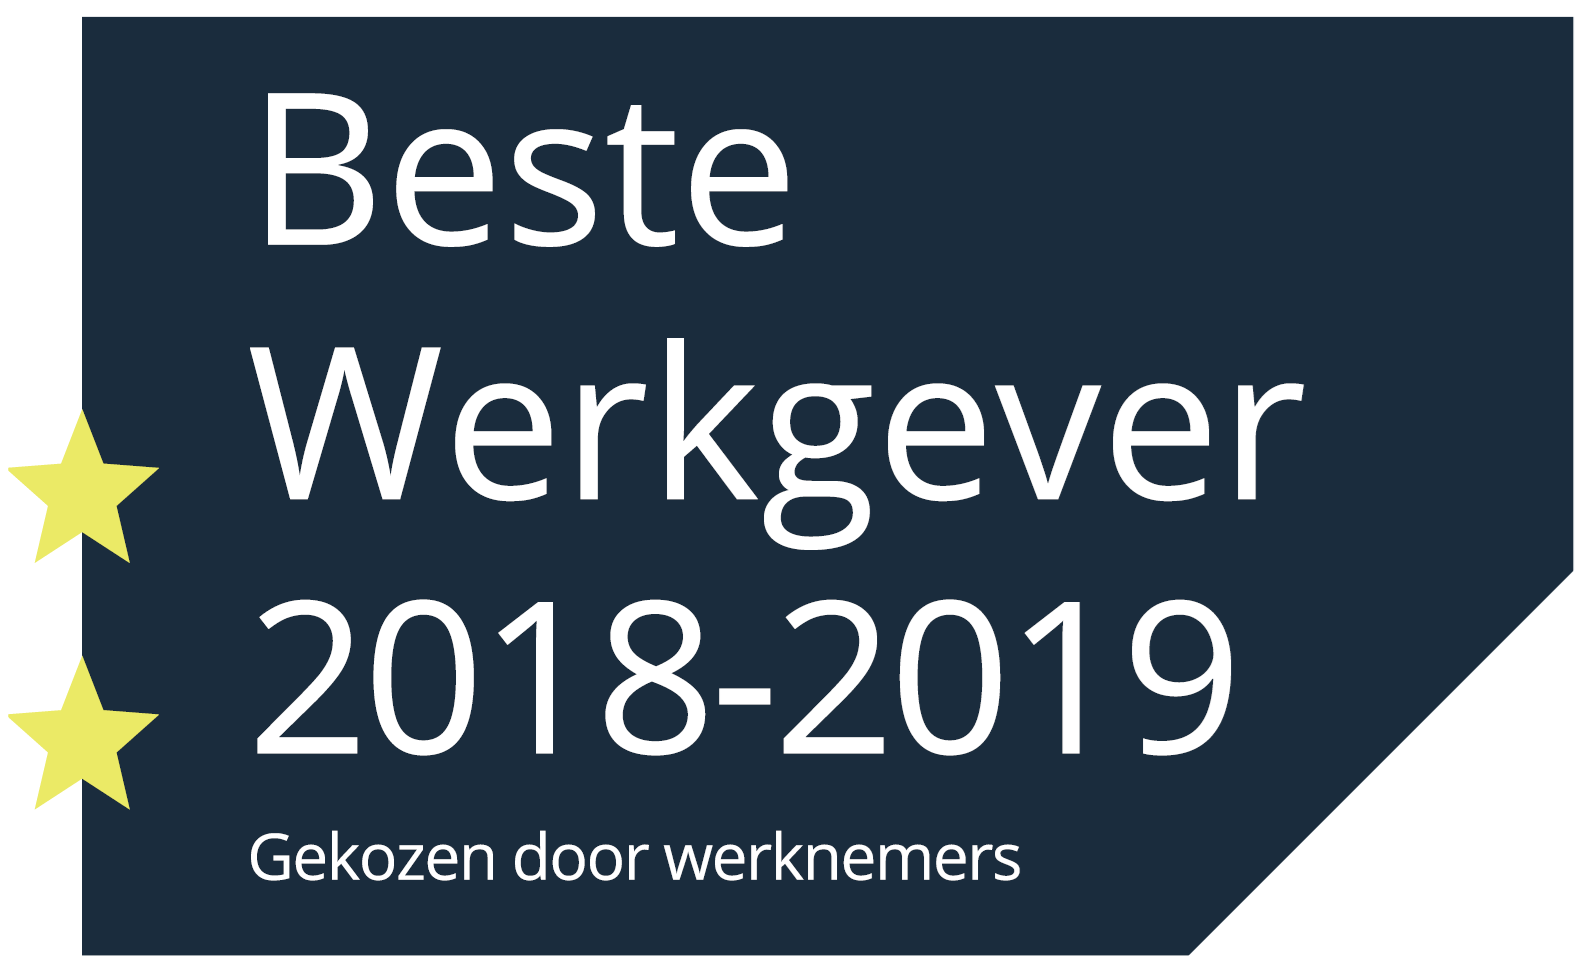 Hotel Okura Amsterdam: keurmerk 'Beste werkgever 2018/2019'